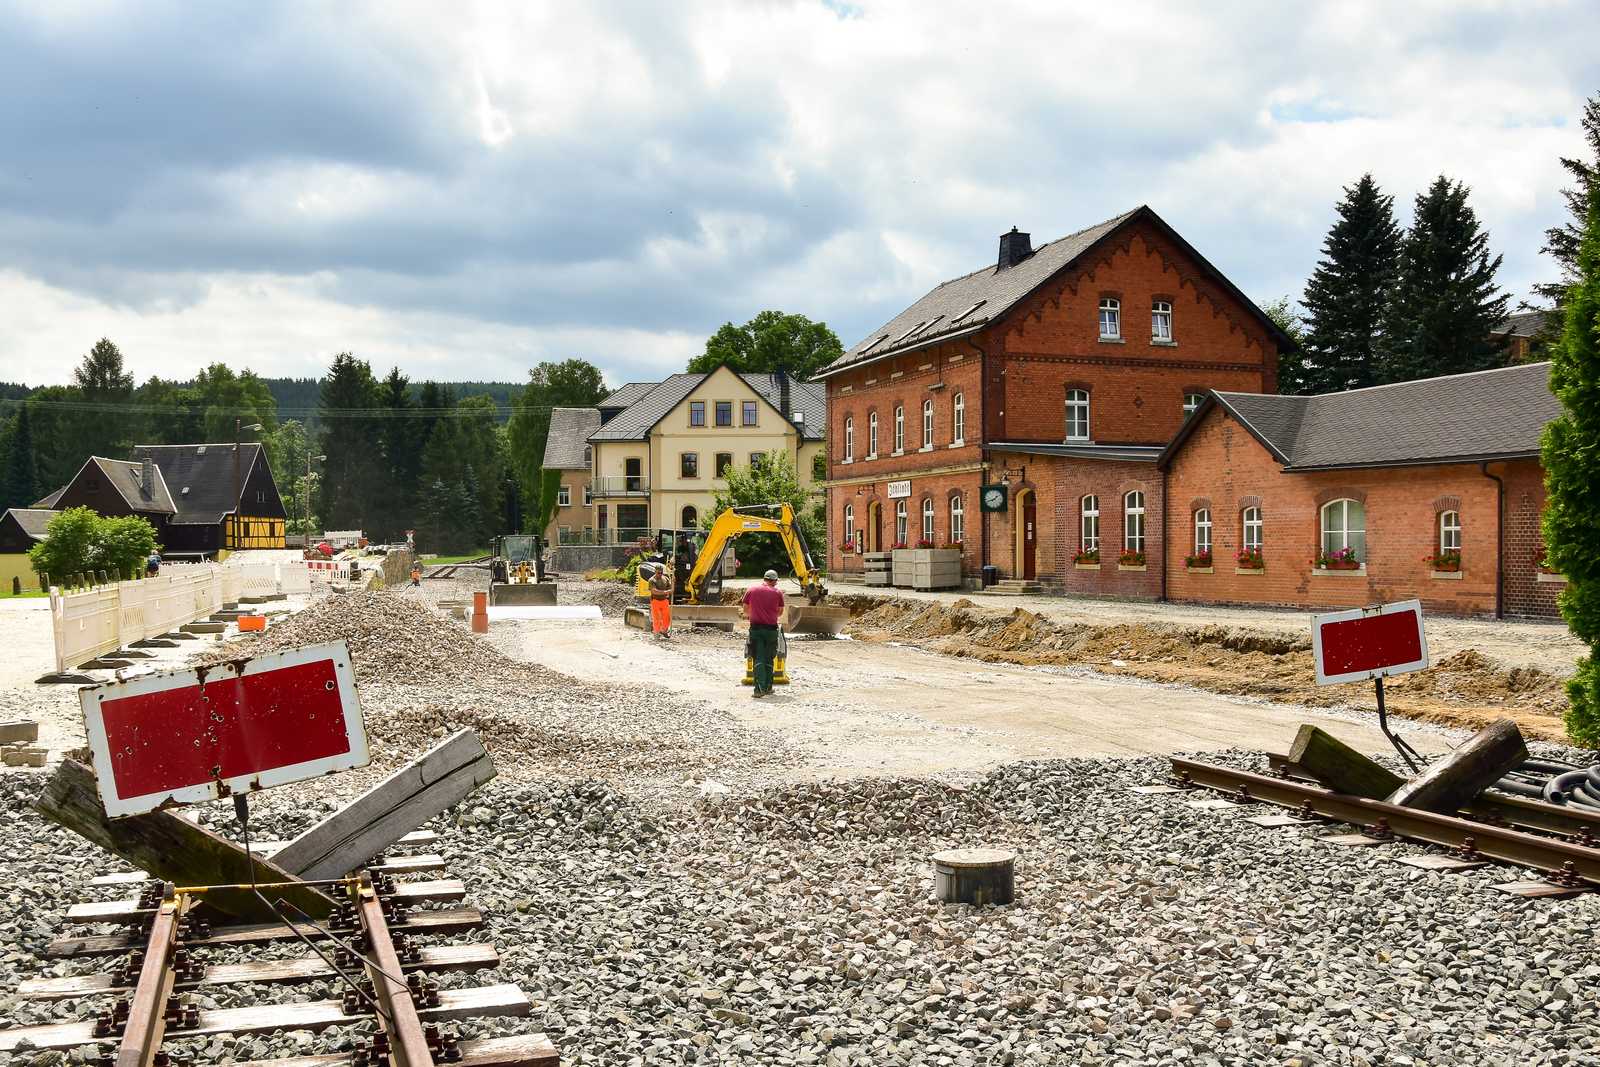 Am 22. Juli 2021 liefen vor dem Empfangsgebäude in Jöhstadt die Vorbereitungen für das Auftragen der unteren Schotterschicht. Hier liegen ab September dann wieder Gleise!